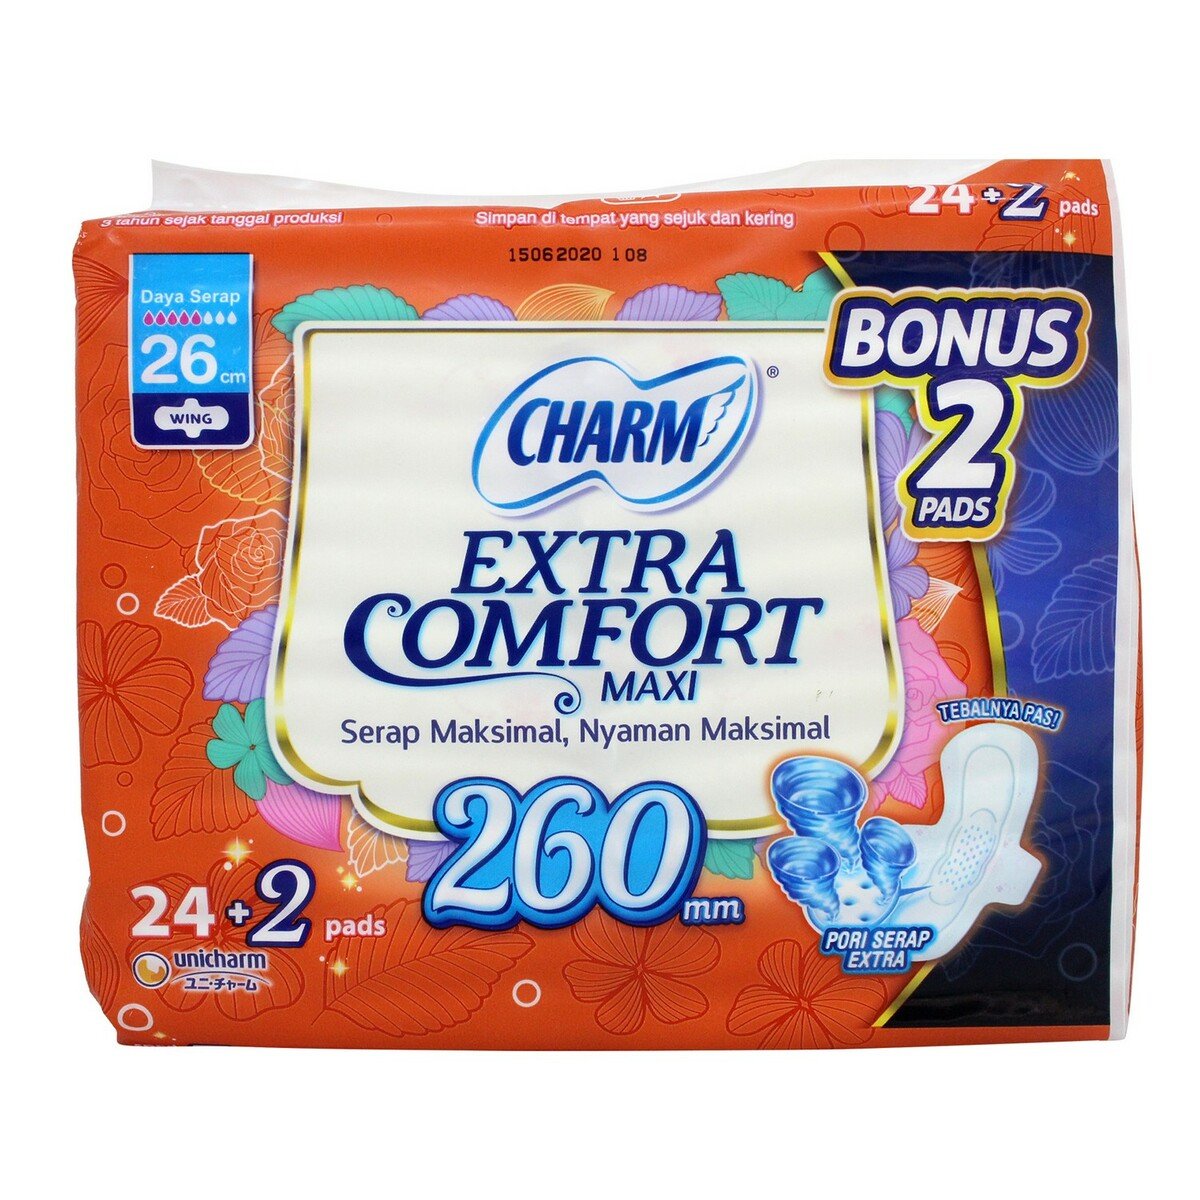 Charm Extra Comfort Maxi Wing 24pcs